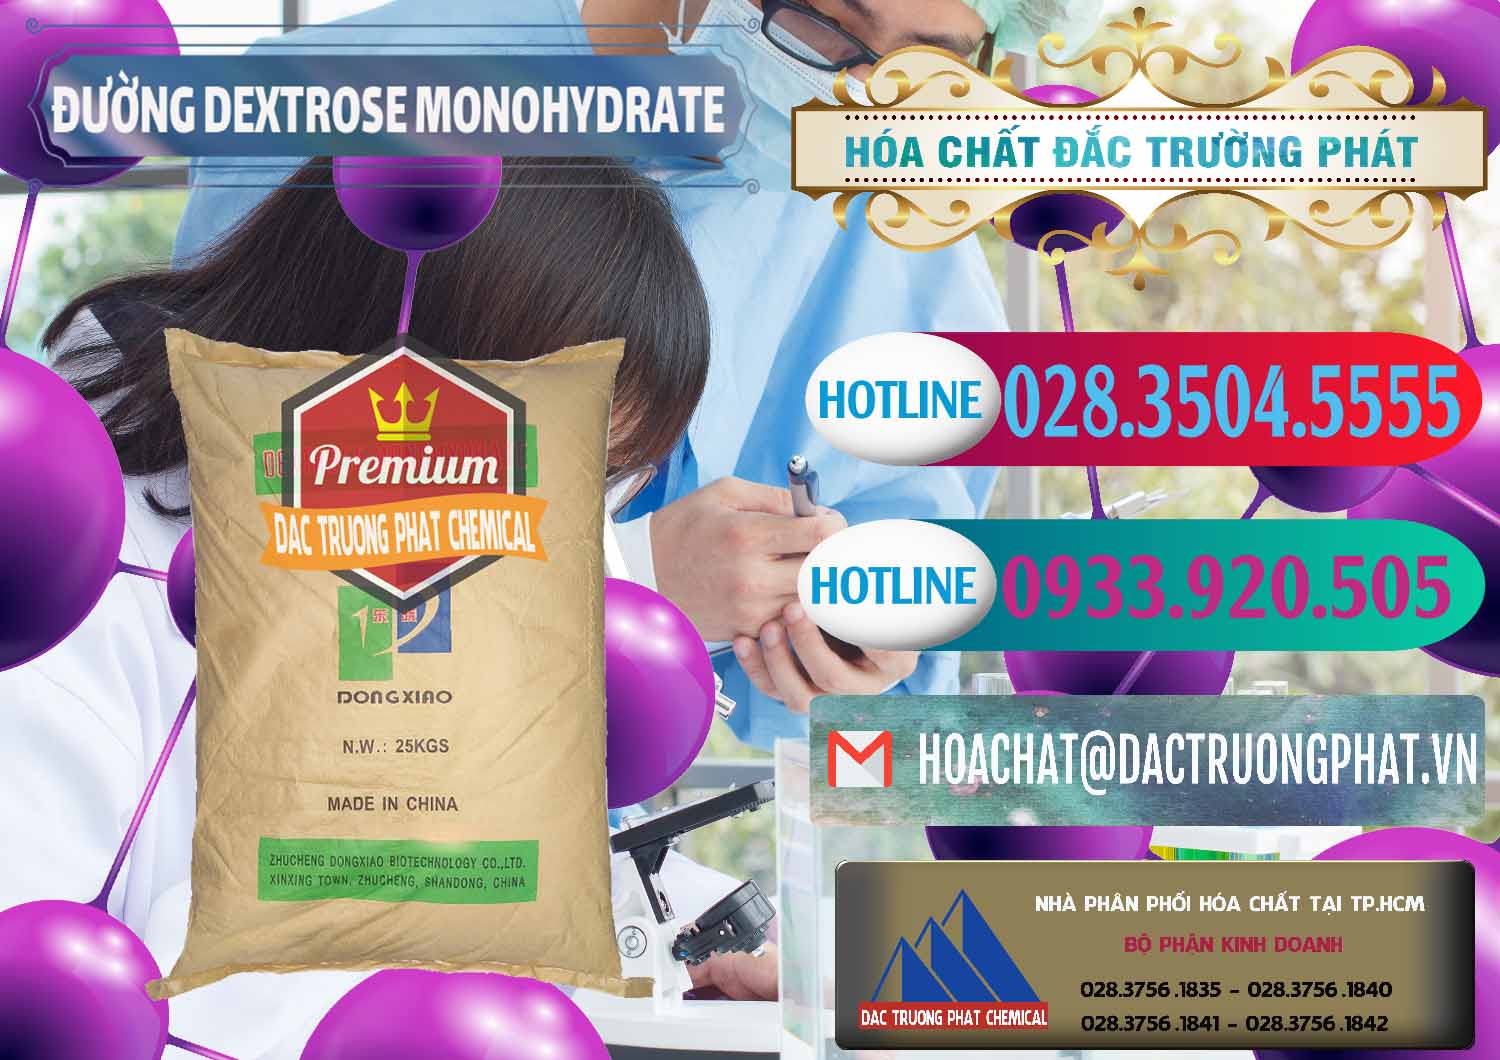 Nơi cung cấp _ bán Đường Dextrose Monohydrate Food Grade Dongxiao Trung Quốc China - 0063 - Nơi chuyên phân phối và nhập khẩu hóa chất tại TP.HCM - truongphat.vn